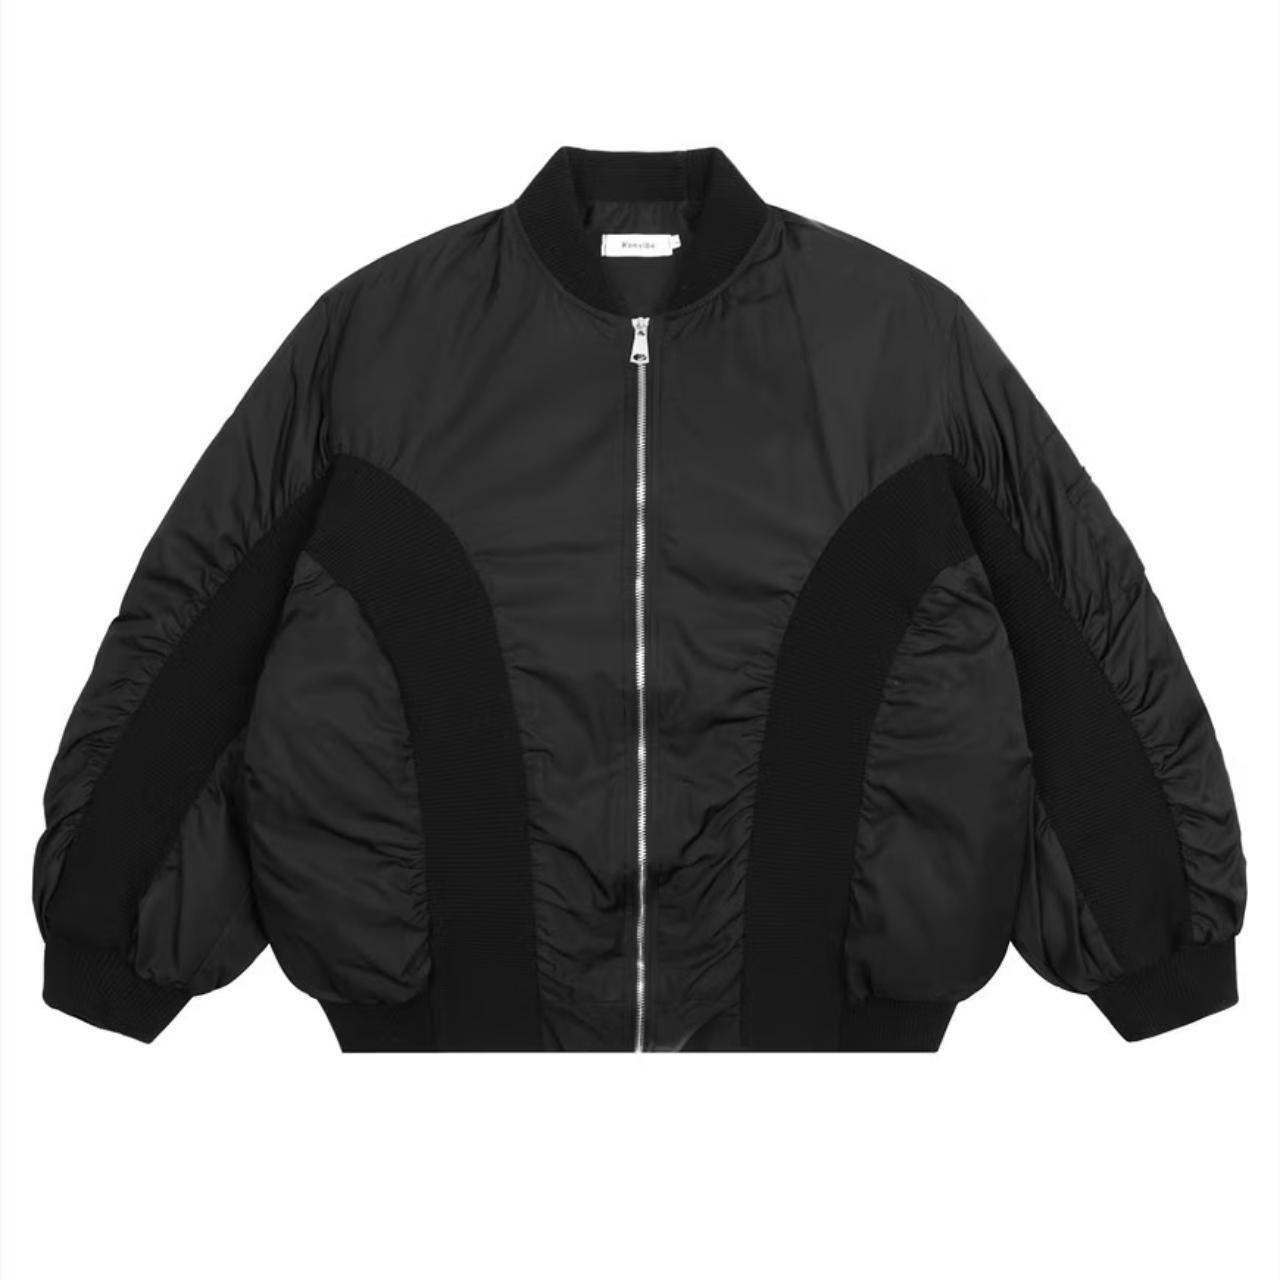 Grunge MA-1 jacket drop shoulder bomber retro coat... - Depop